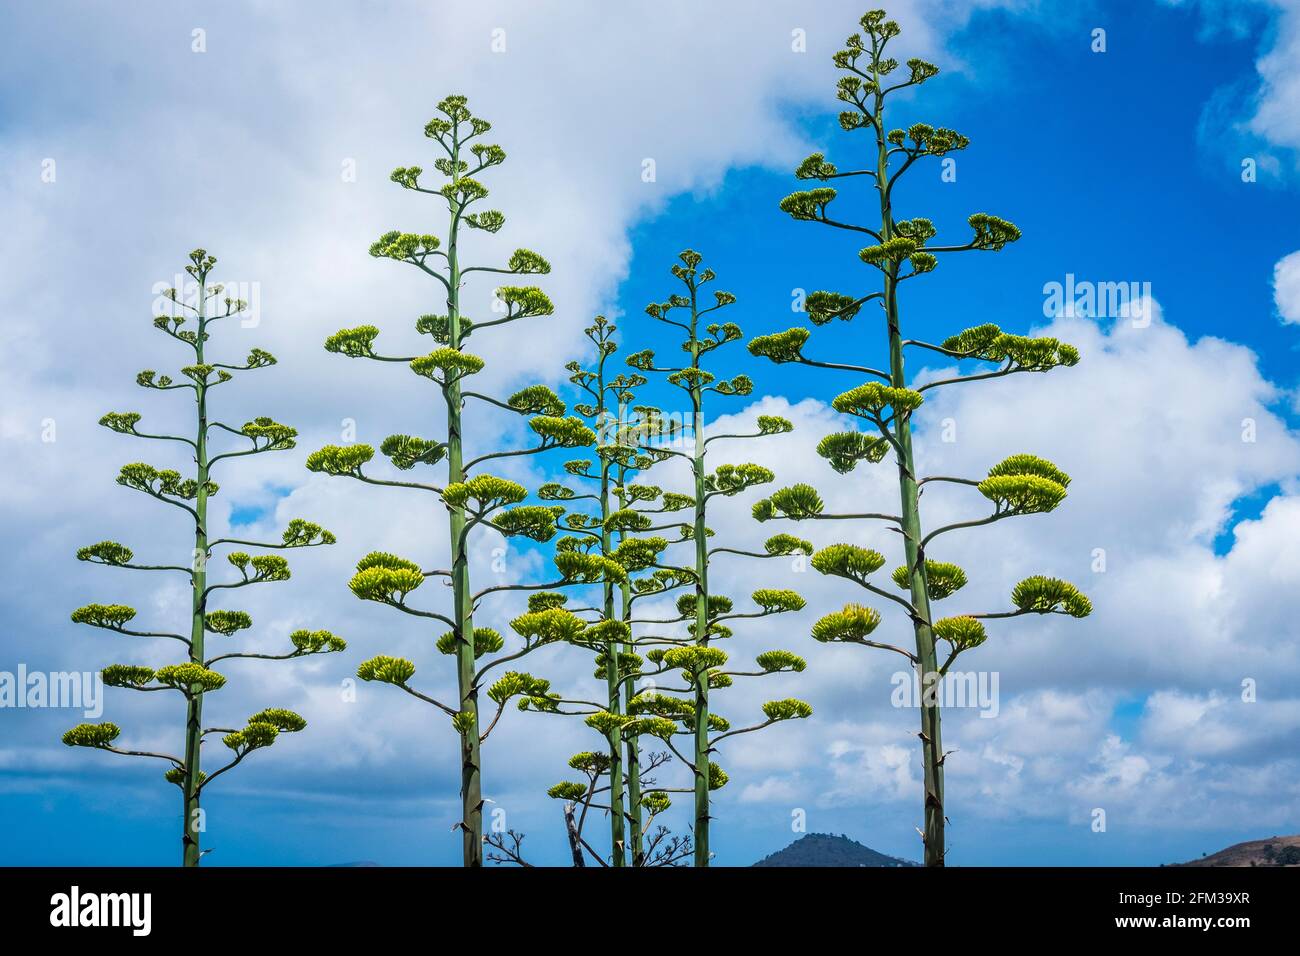 Gran Canaria, eine spanische Kanarische Insel vor der Nordwestküste von Afrika. Stems of agave in bloom with blue sky and clouds. Jahrhundertpflanze Stock Photo